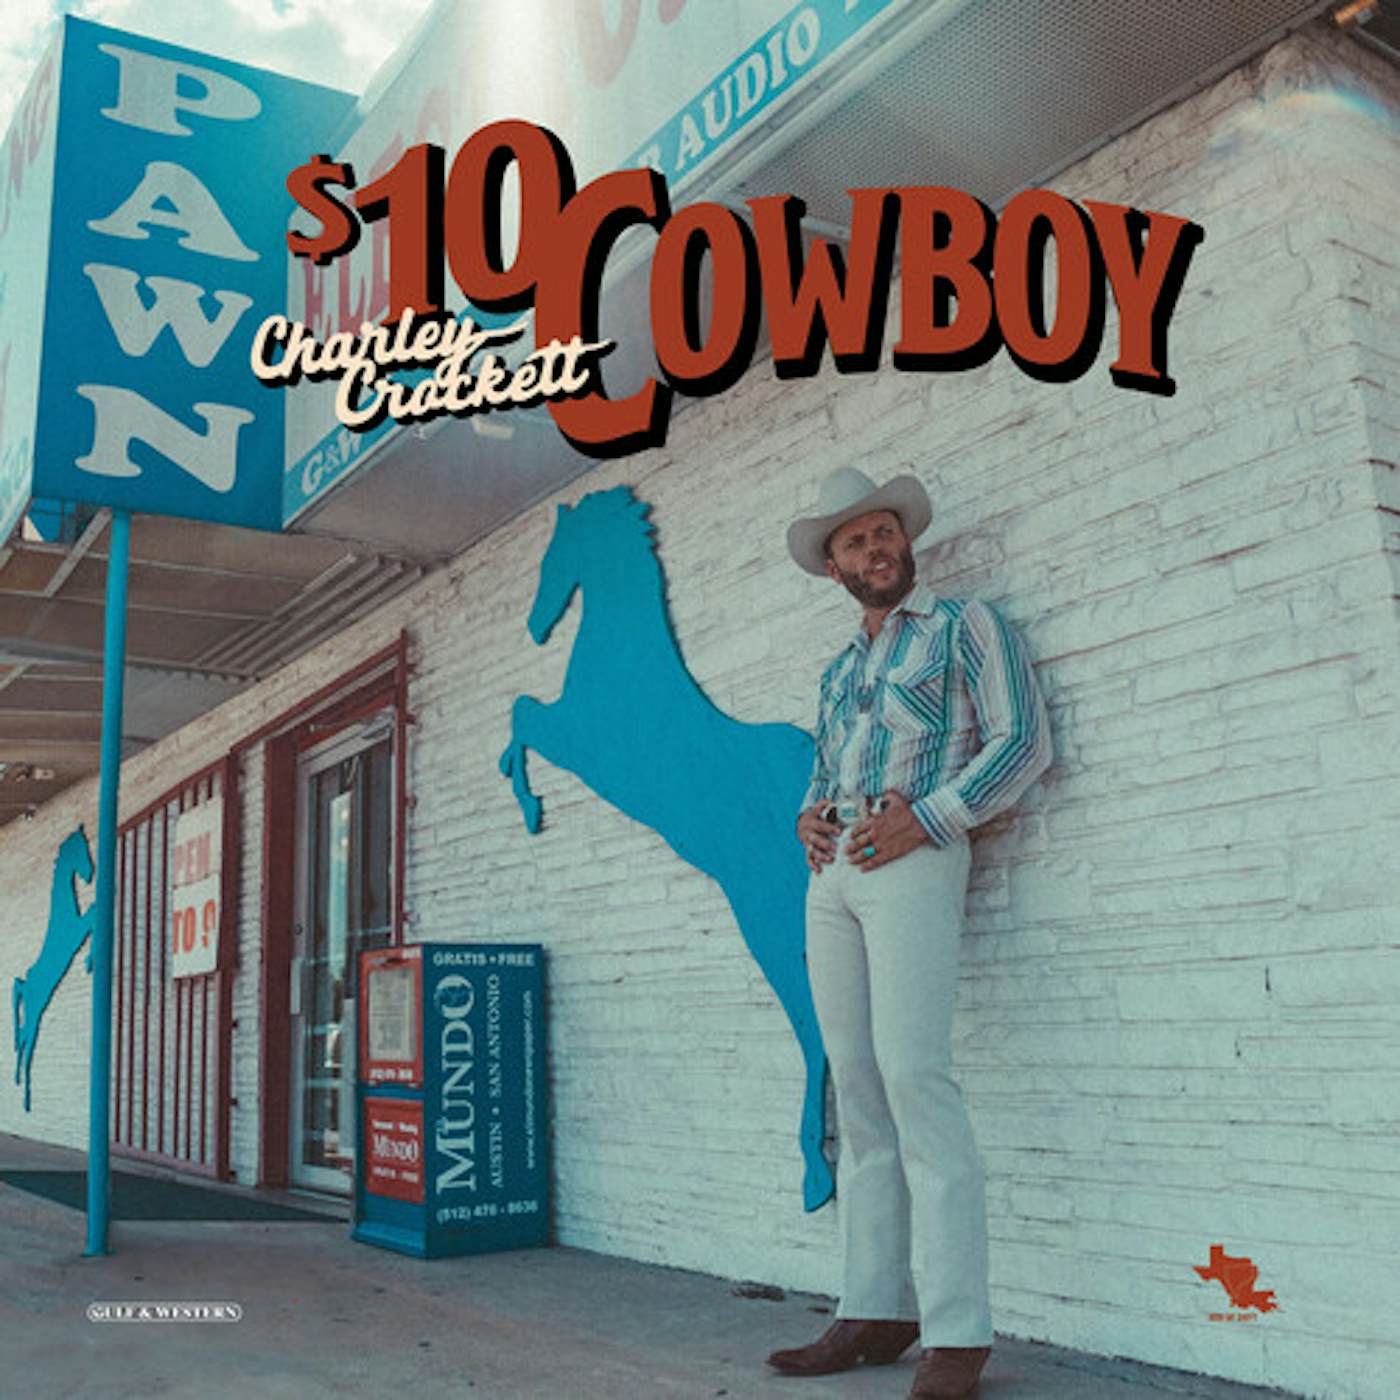 Charley Crockett $10 COWBOY CD